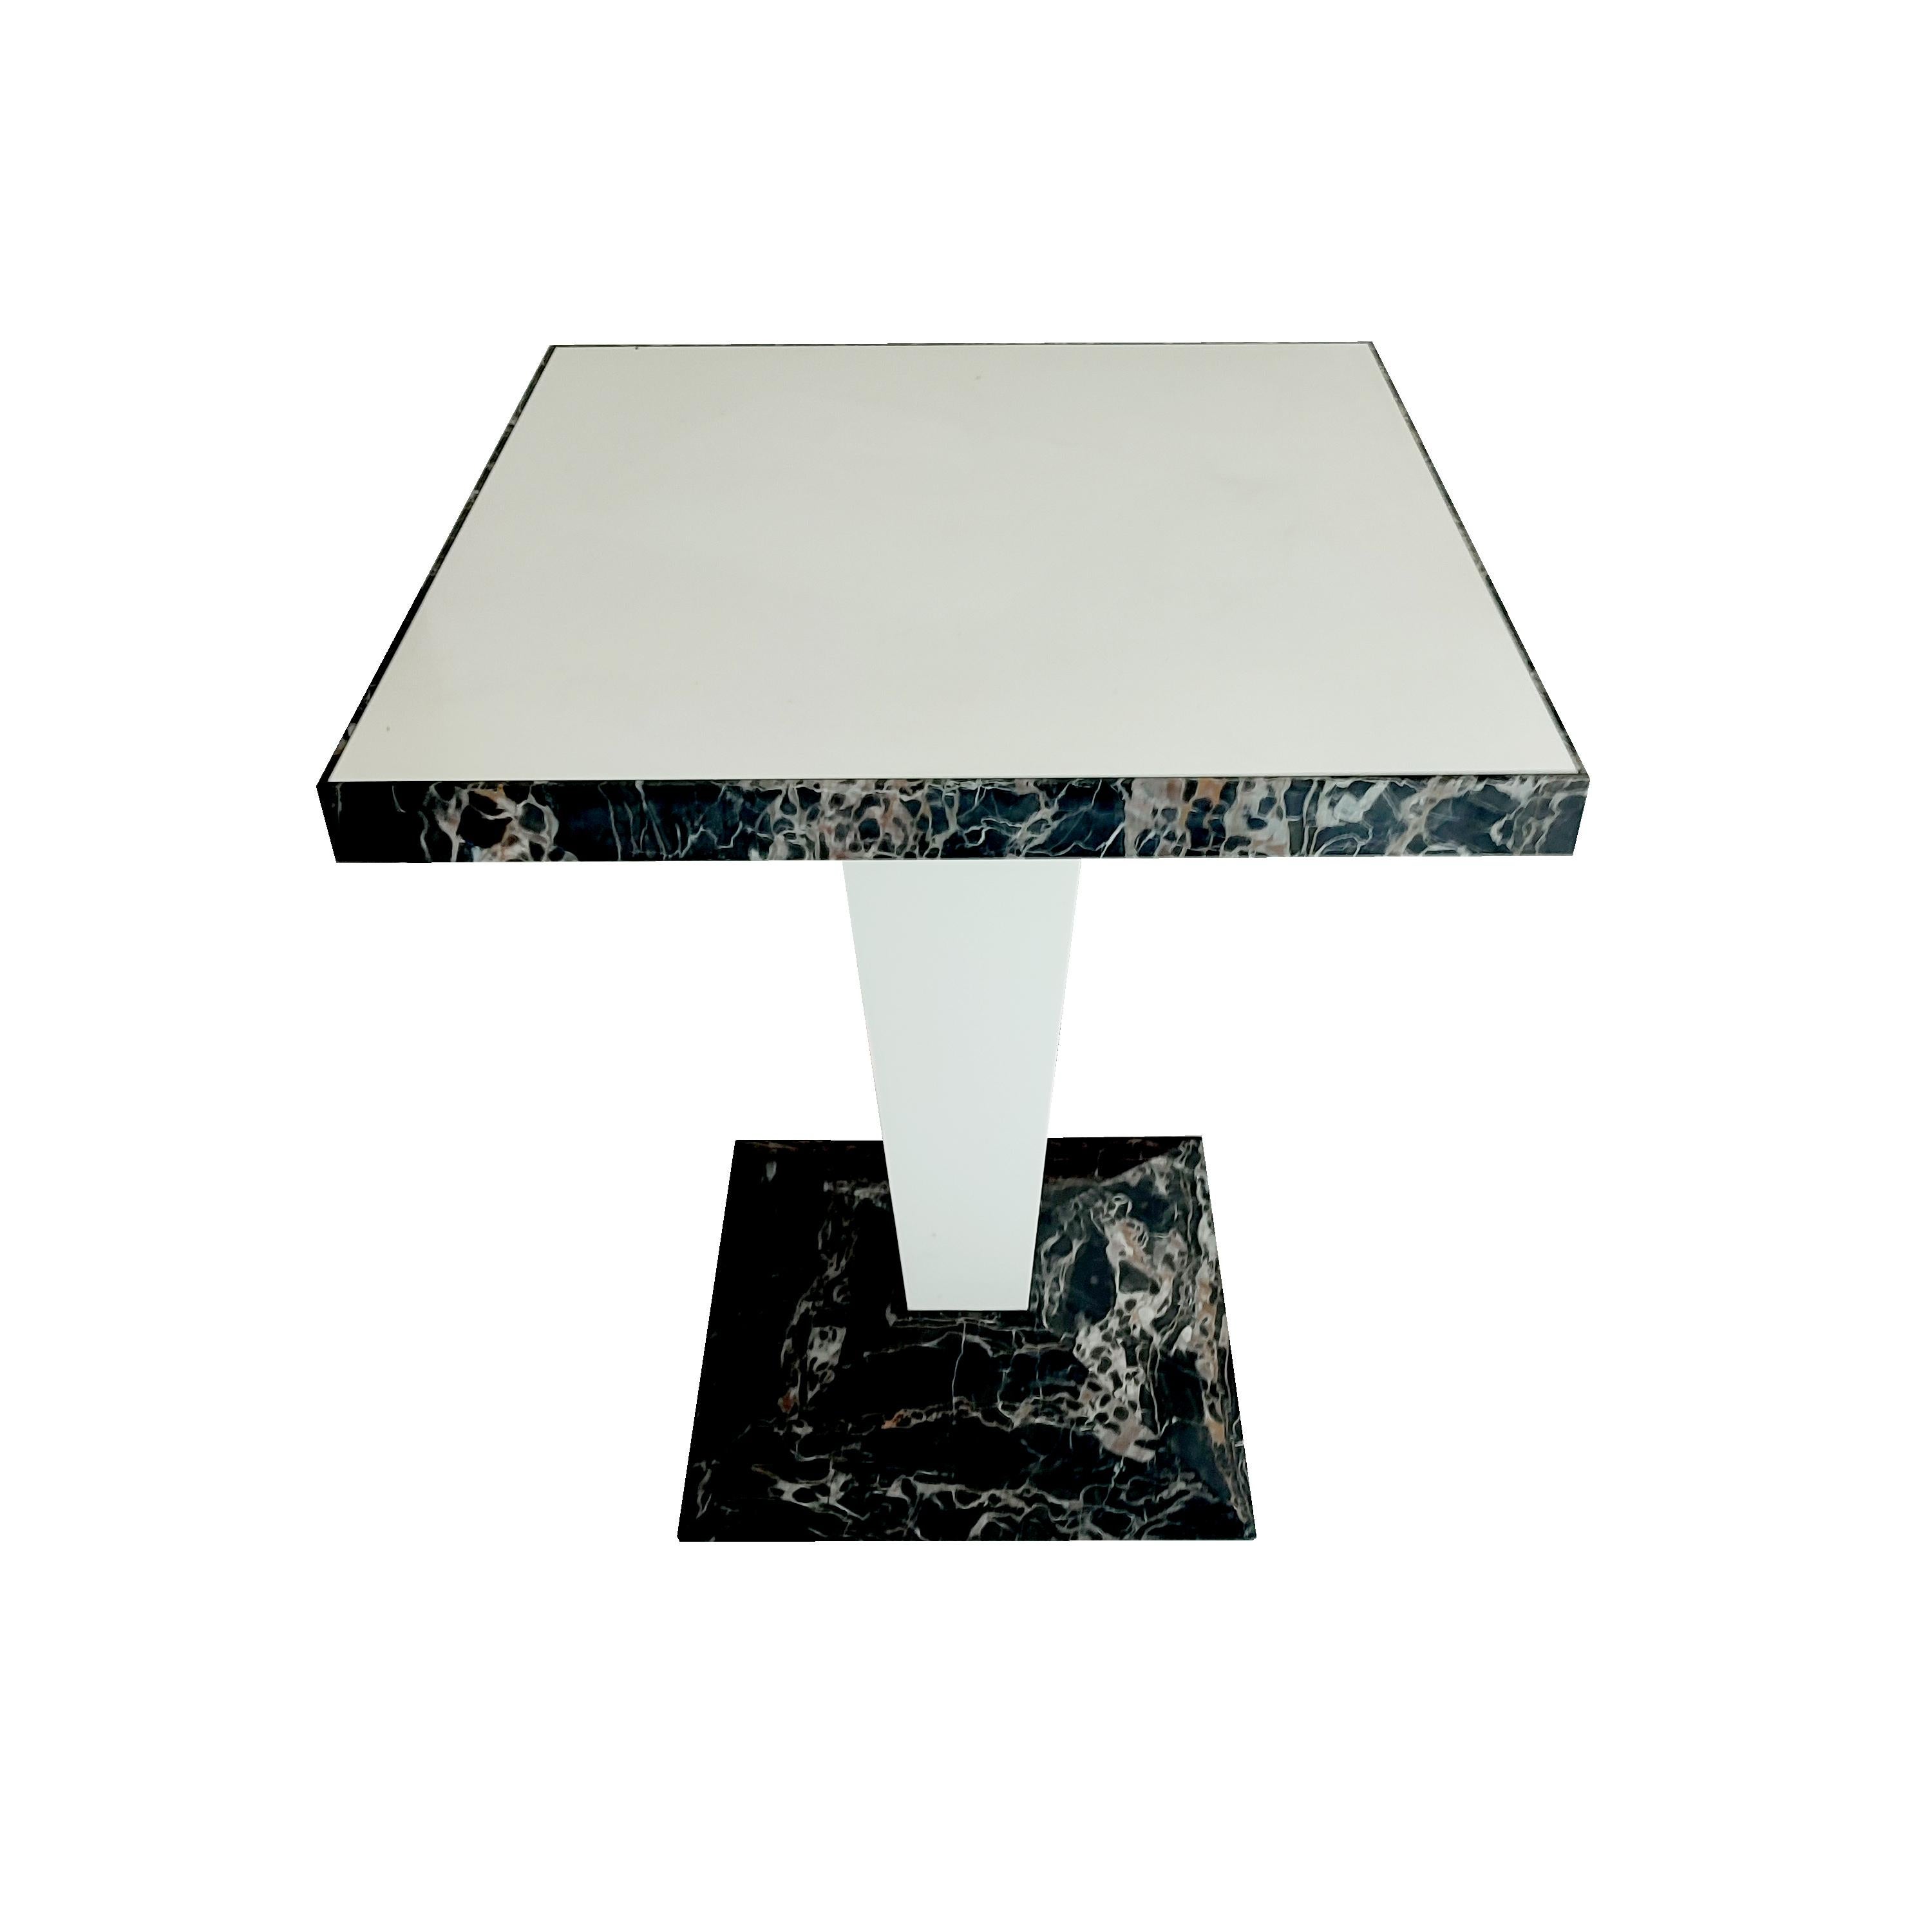 PORTORO Marble Design/One Table & White Krion by Joaquín Moll Meddel Spain En stock.
La table haute de style comptoir, ou table de travail, est fabriquée en marbre noir italien Portoro, le marbre noir italien le plus cher au monde. Le marbre